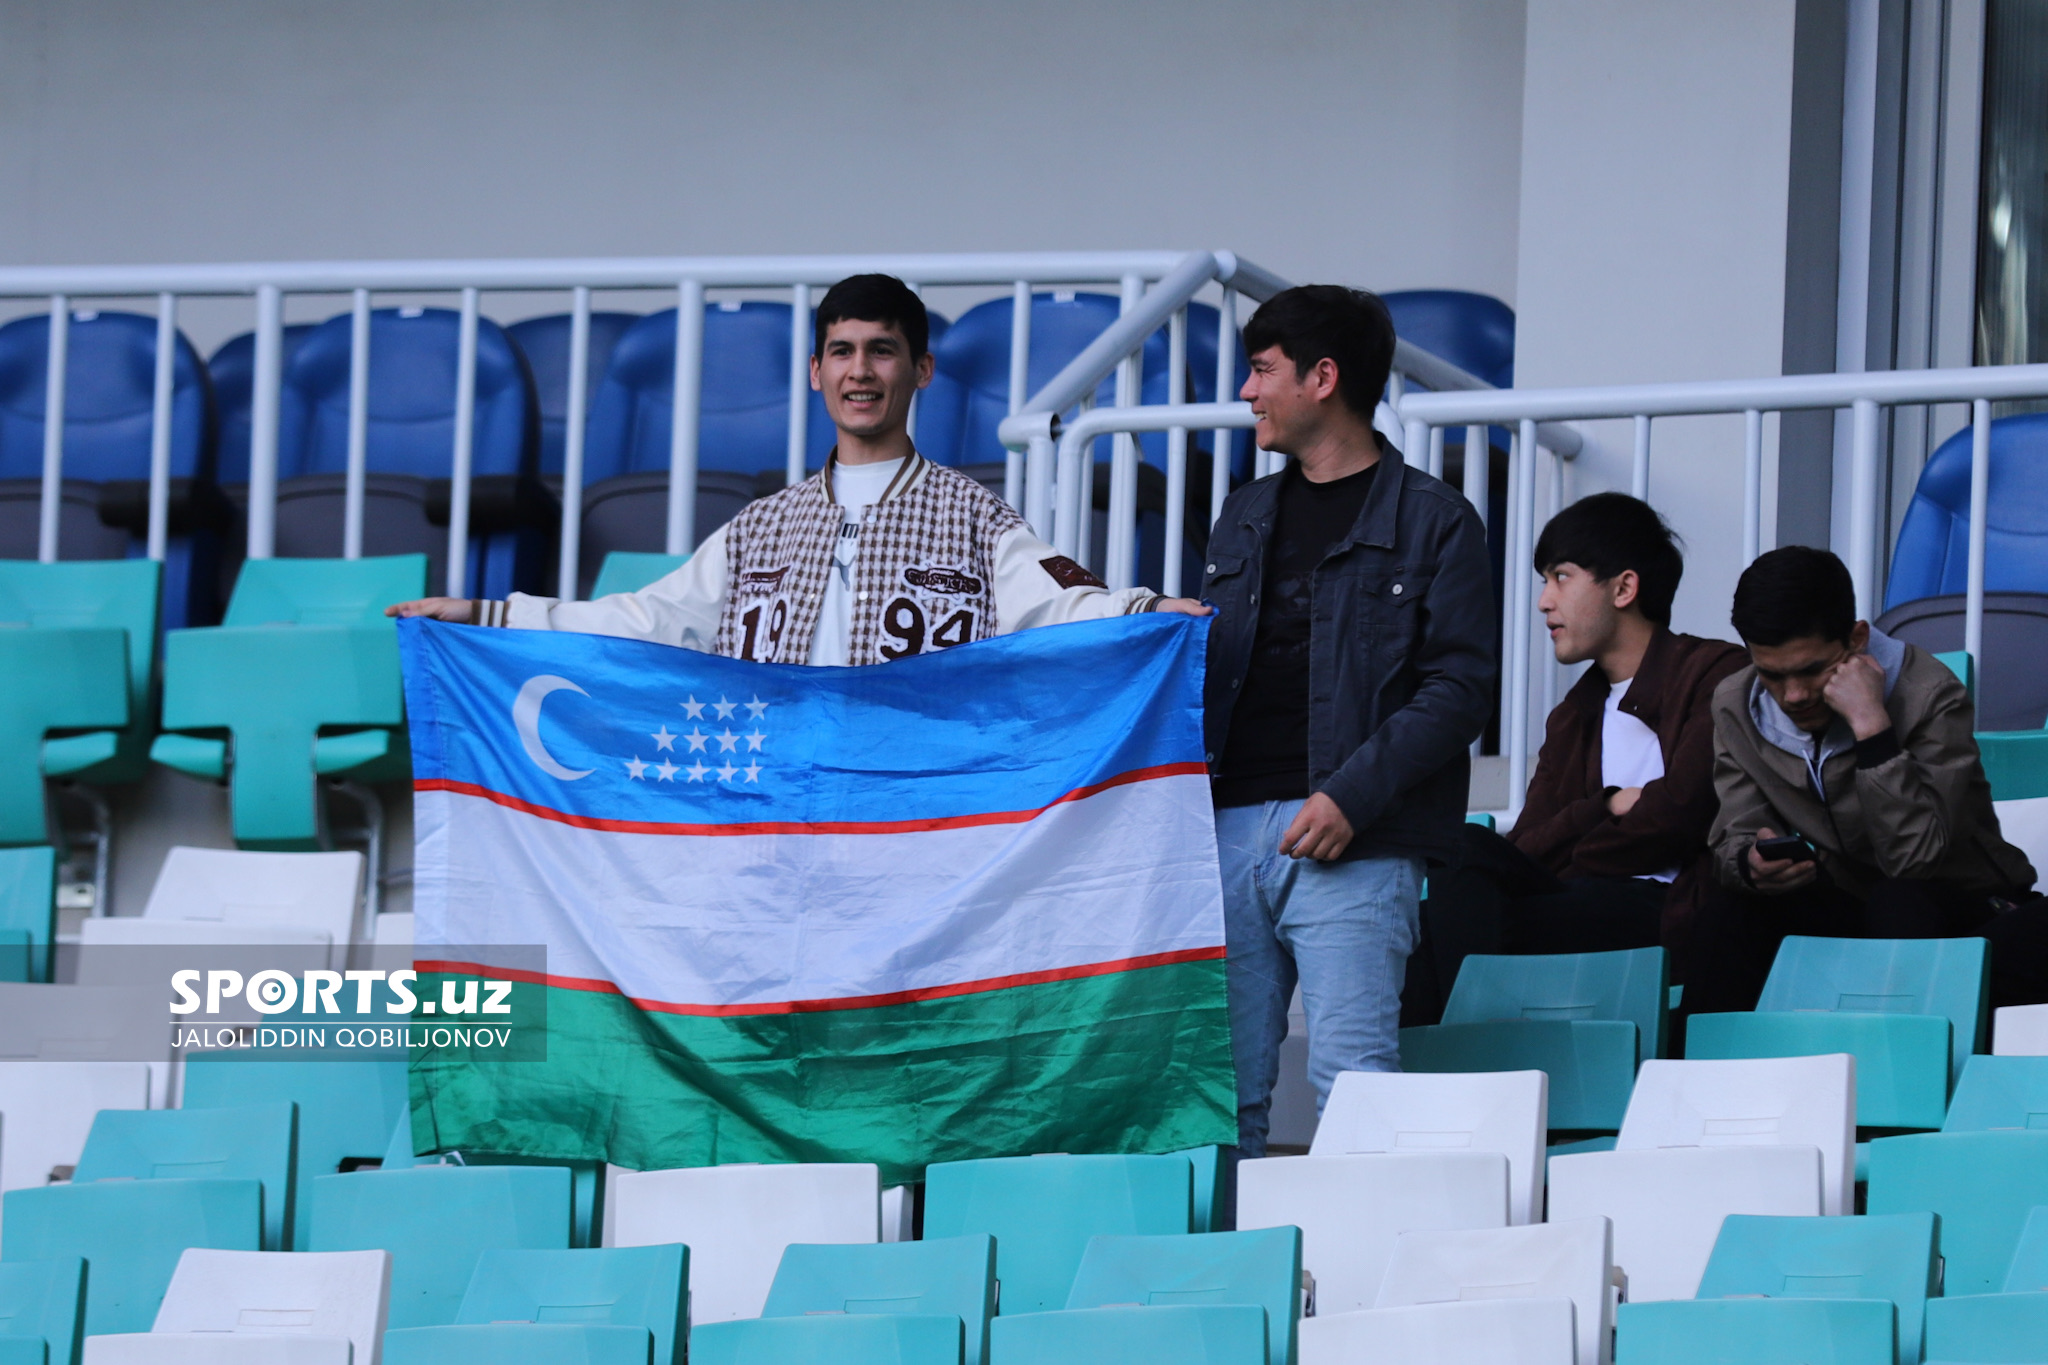 Uzbekistan - Iraq fans